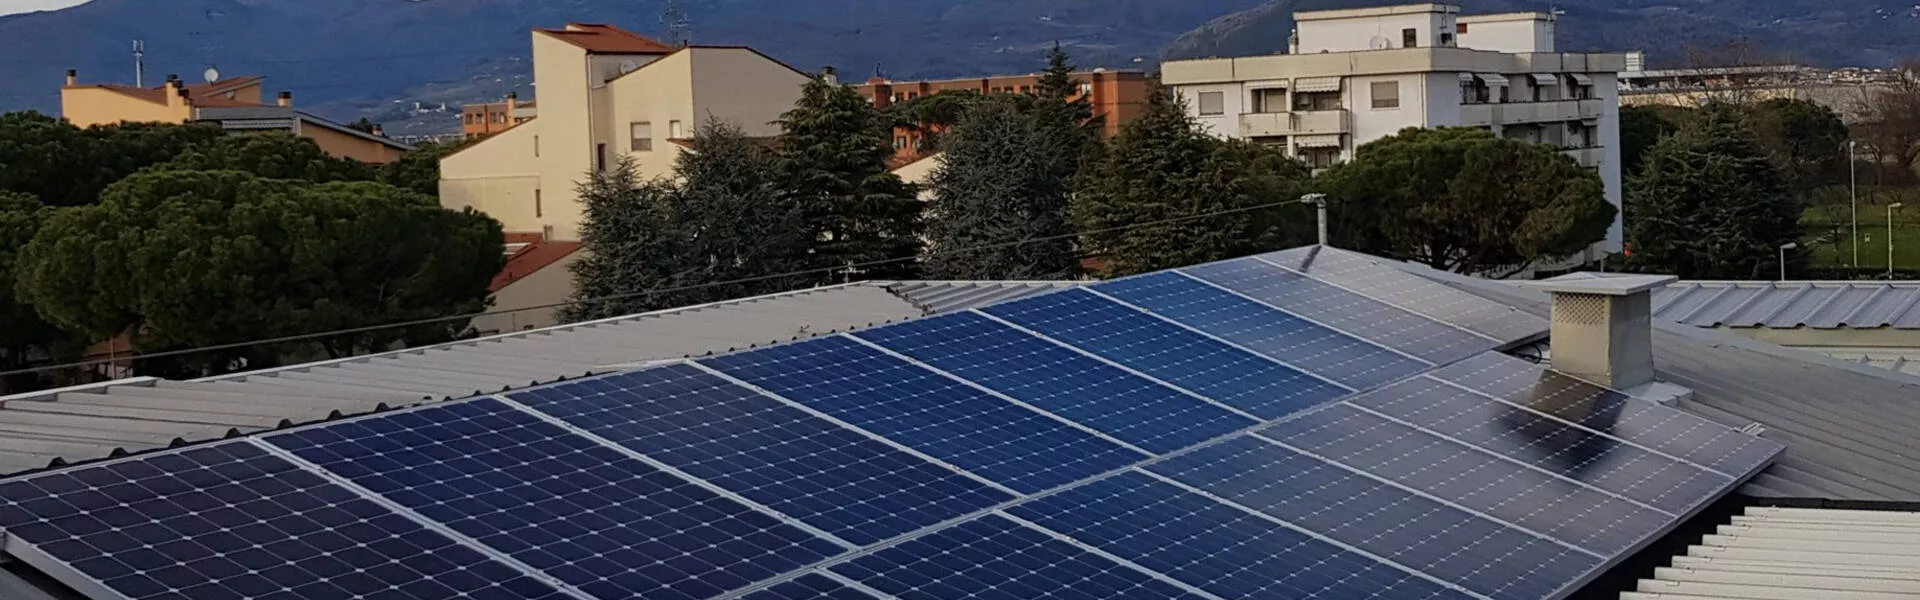 L’edilizia popolare sceglie il fotovoltaico SunPower e mostra i vantaggi dell’utilizzo dell’energia solare e rinnovabile per il risparmio.